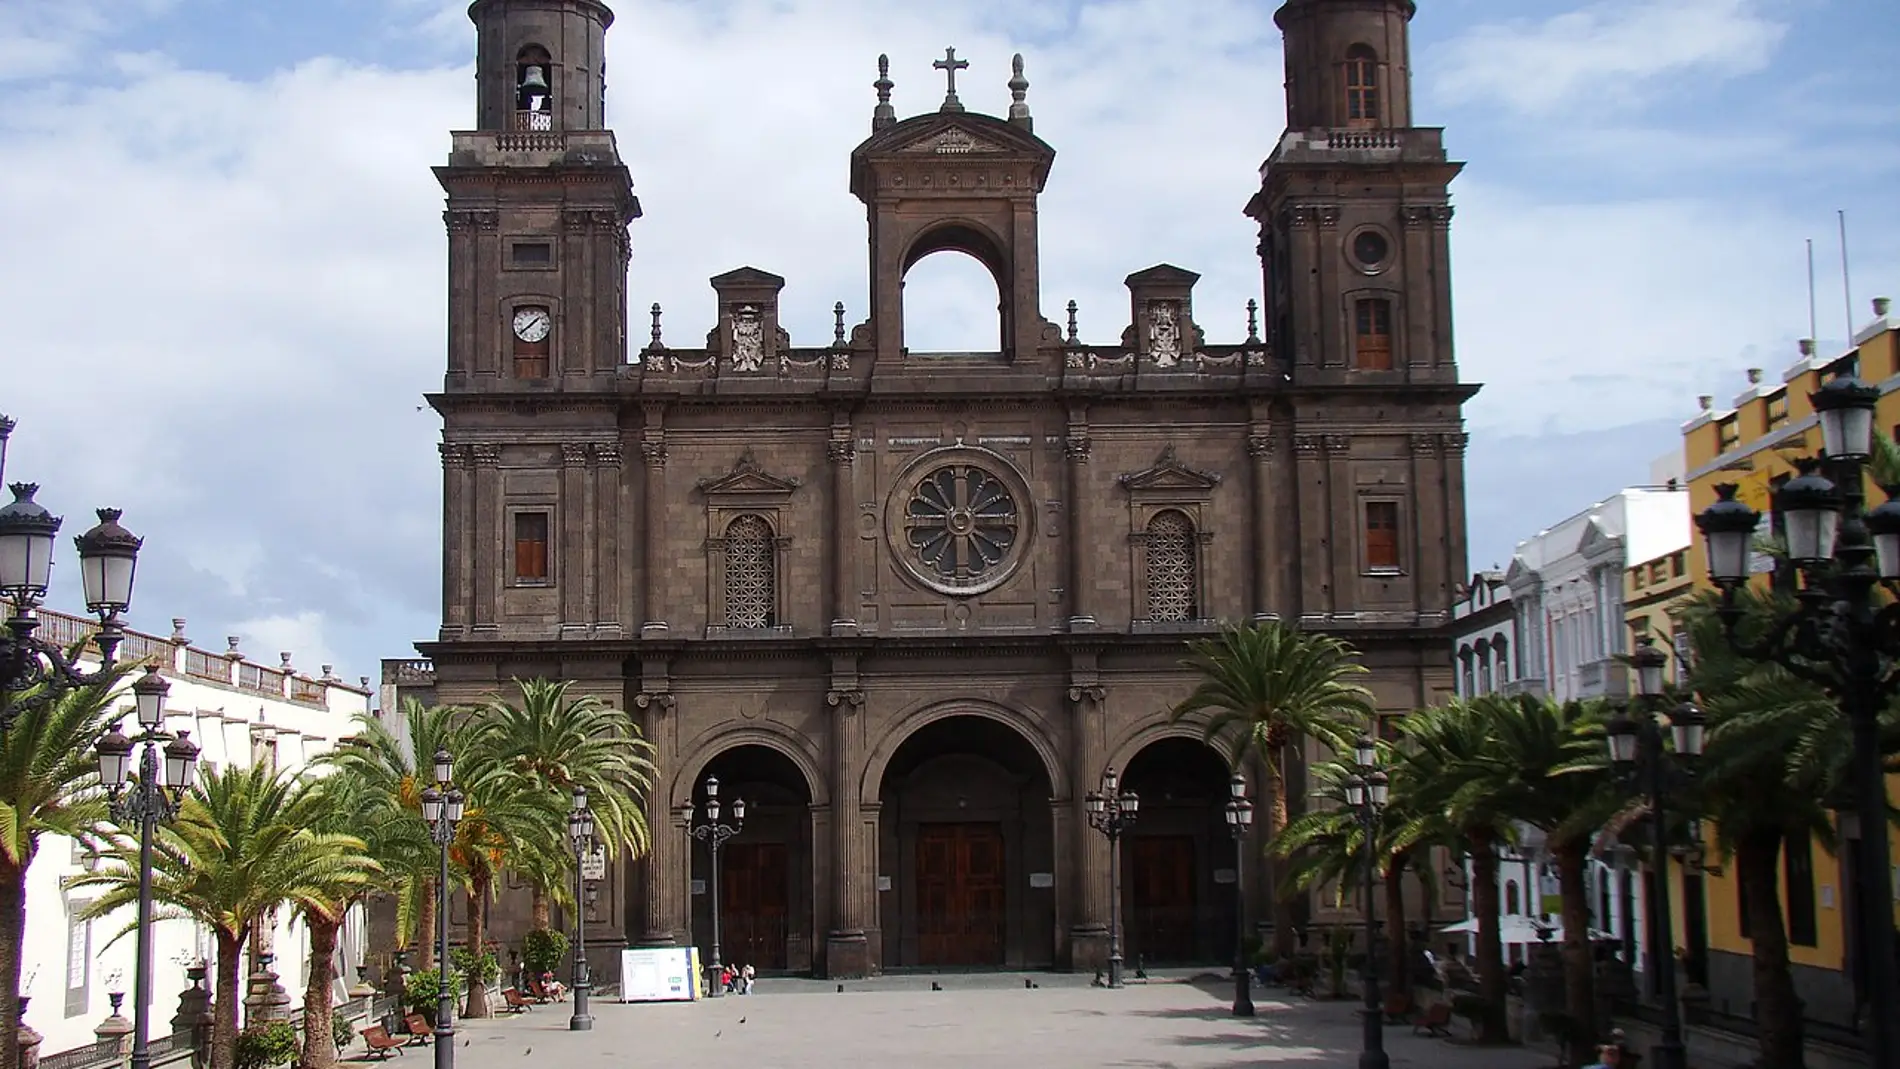 Descubre la Catedral-Basílica de Santa Ana de Las Palmas de Gran Canaria y su vinculación con los Reyes Católicos